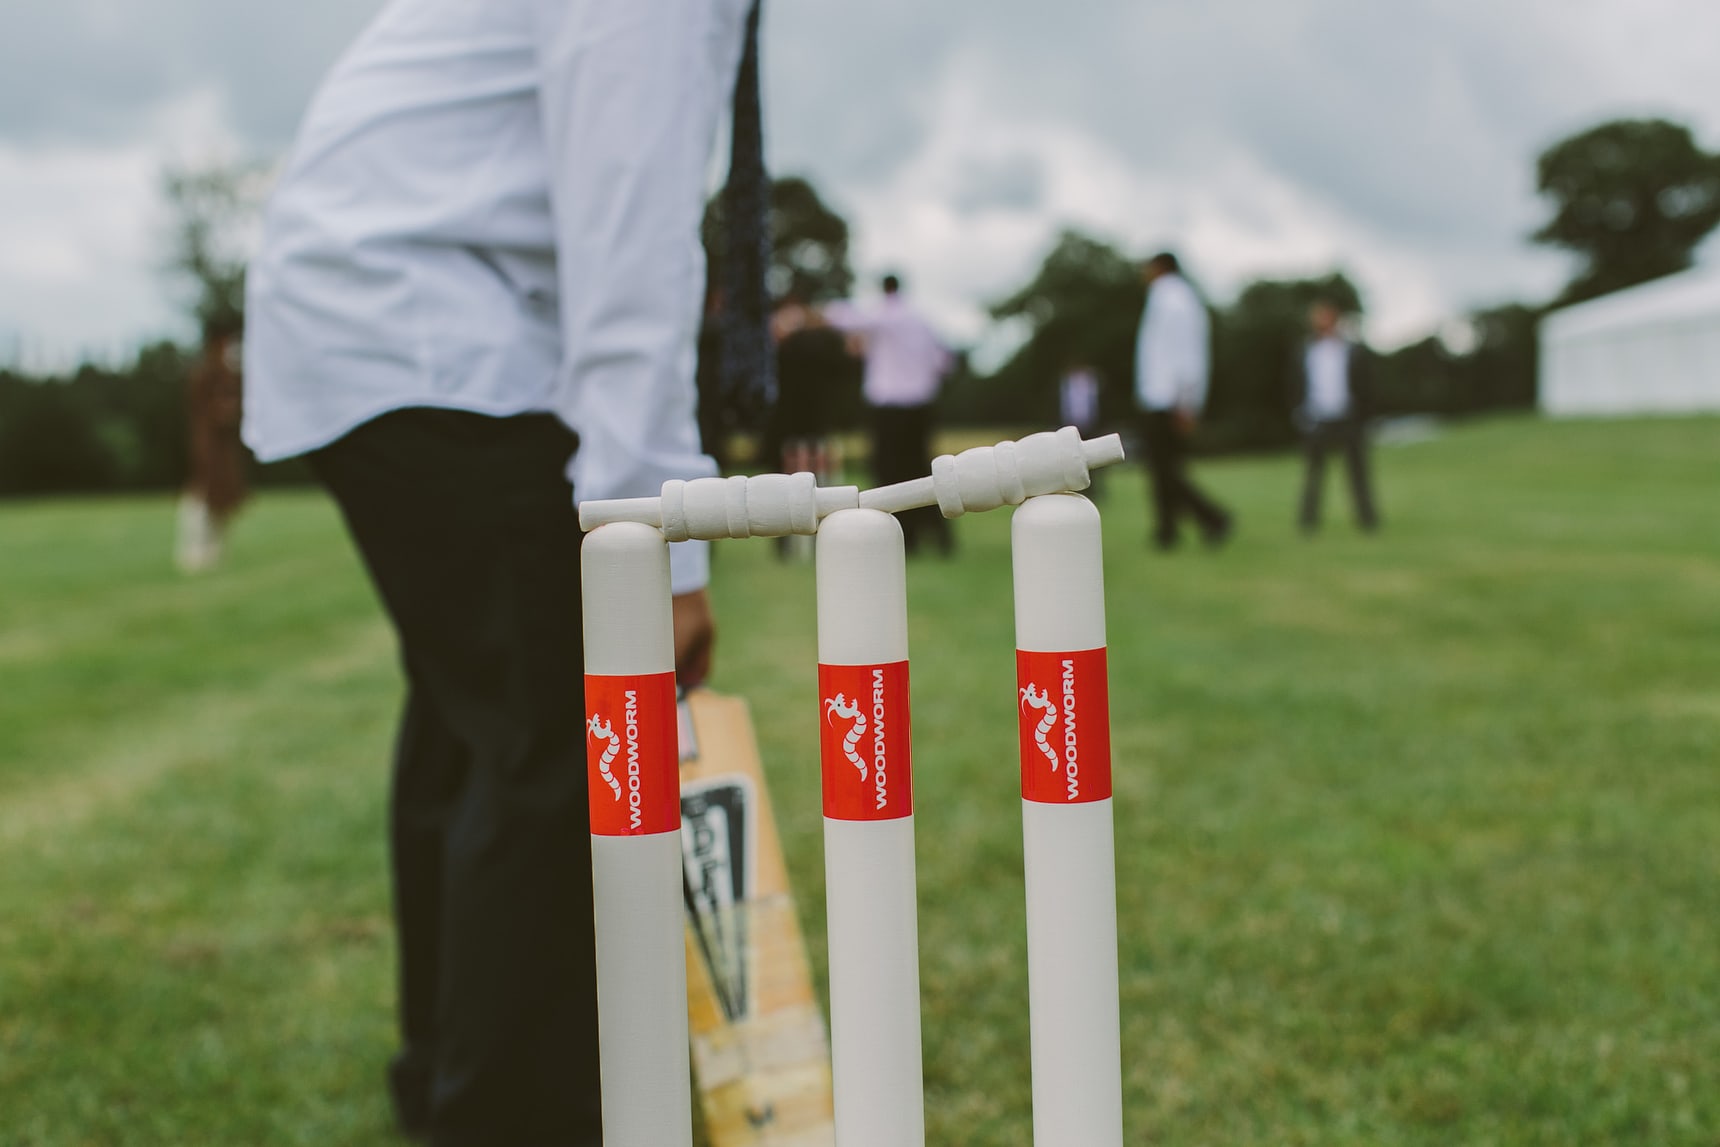 game of cricket at hindu wedding